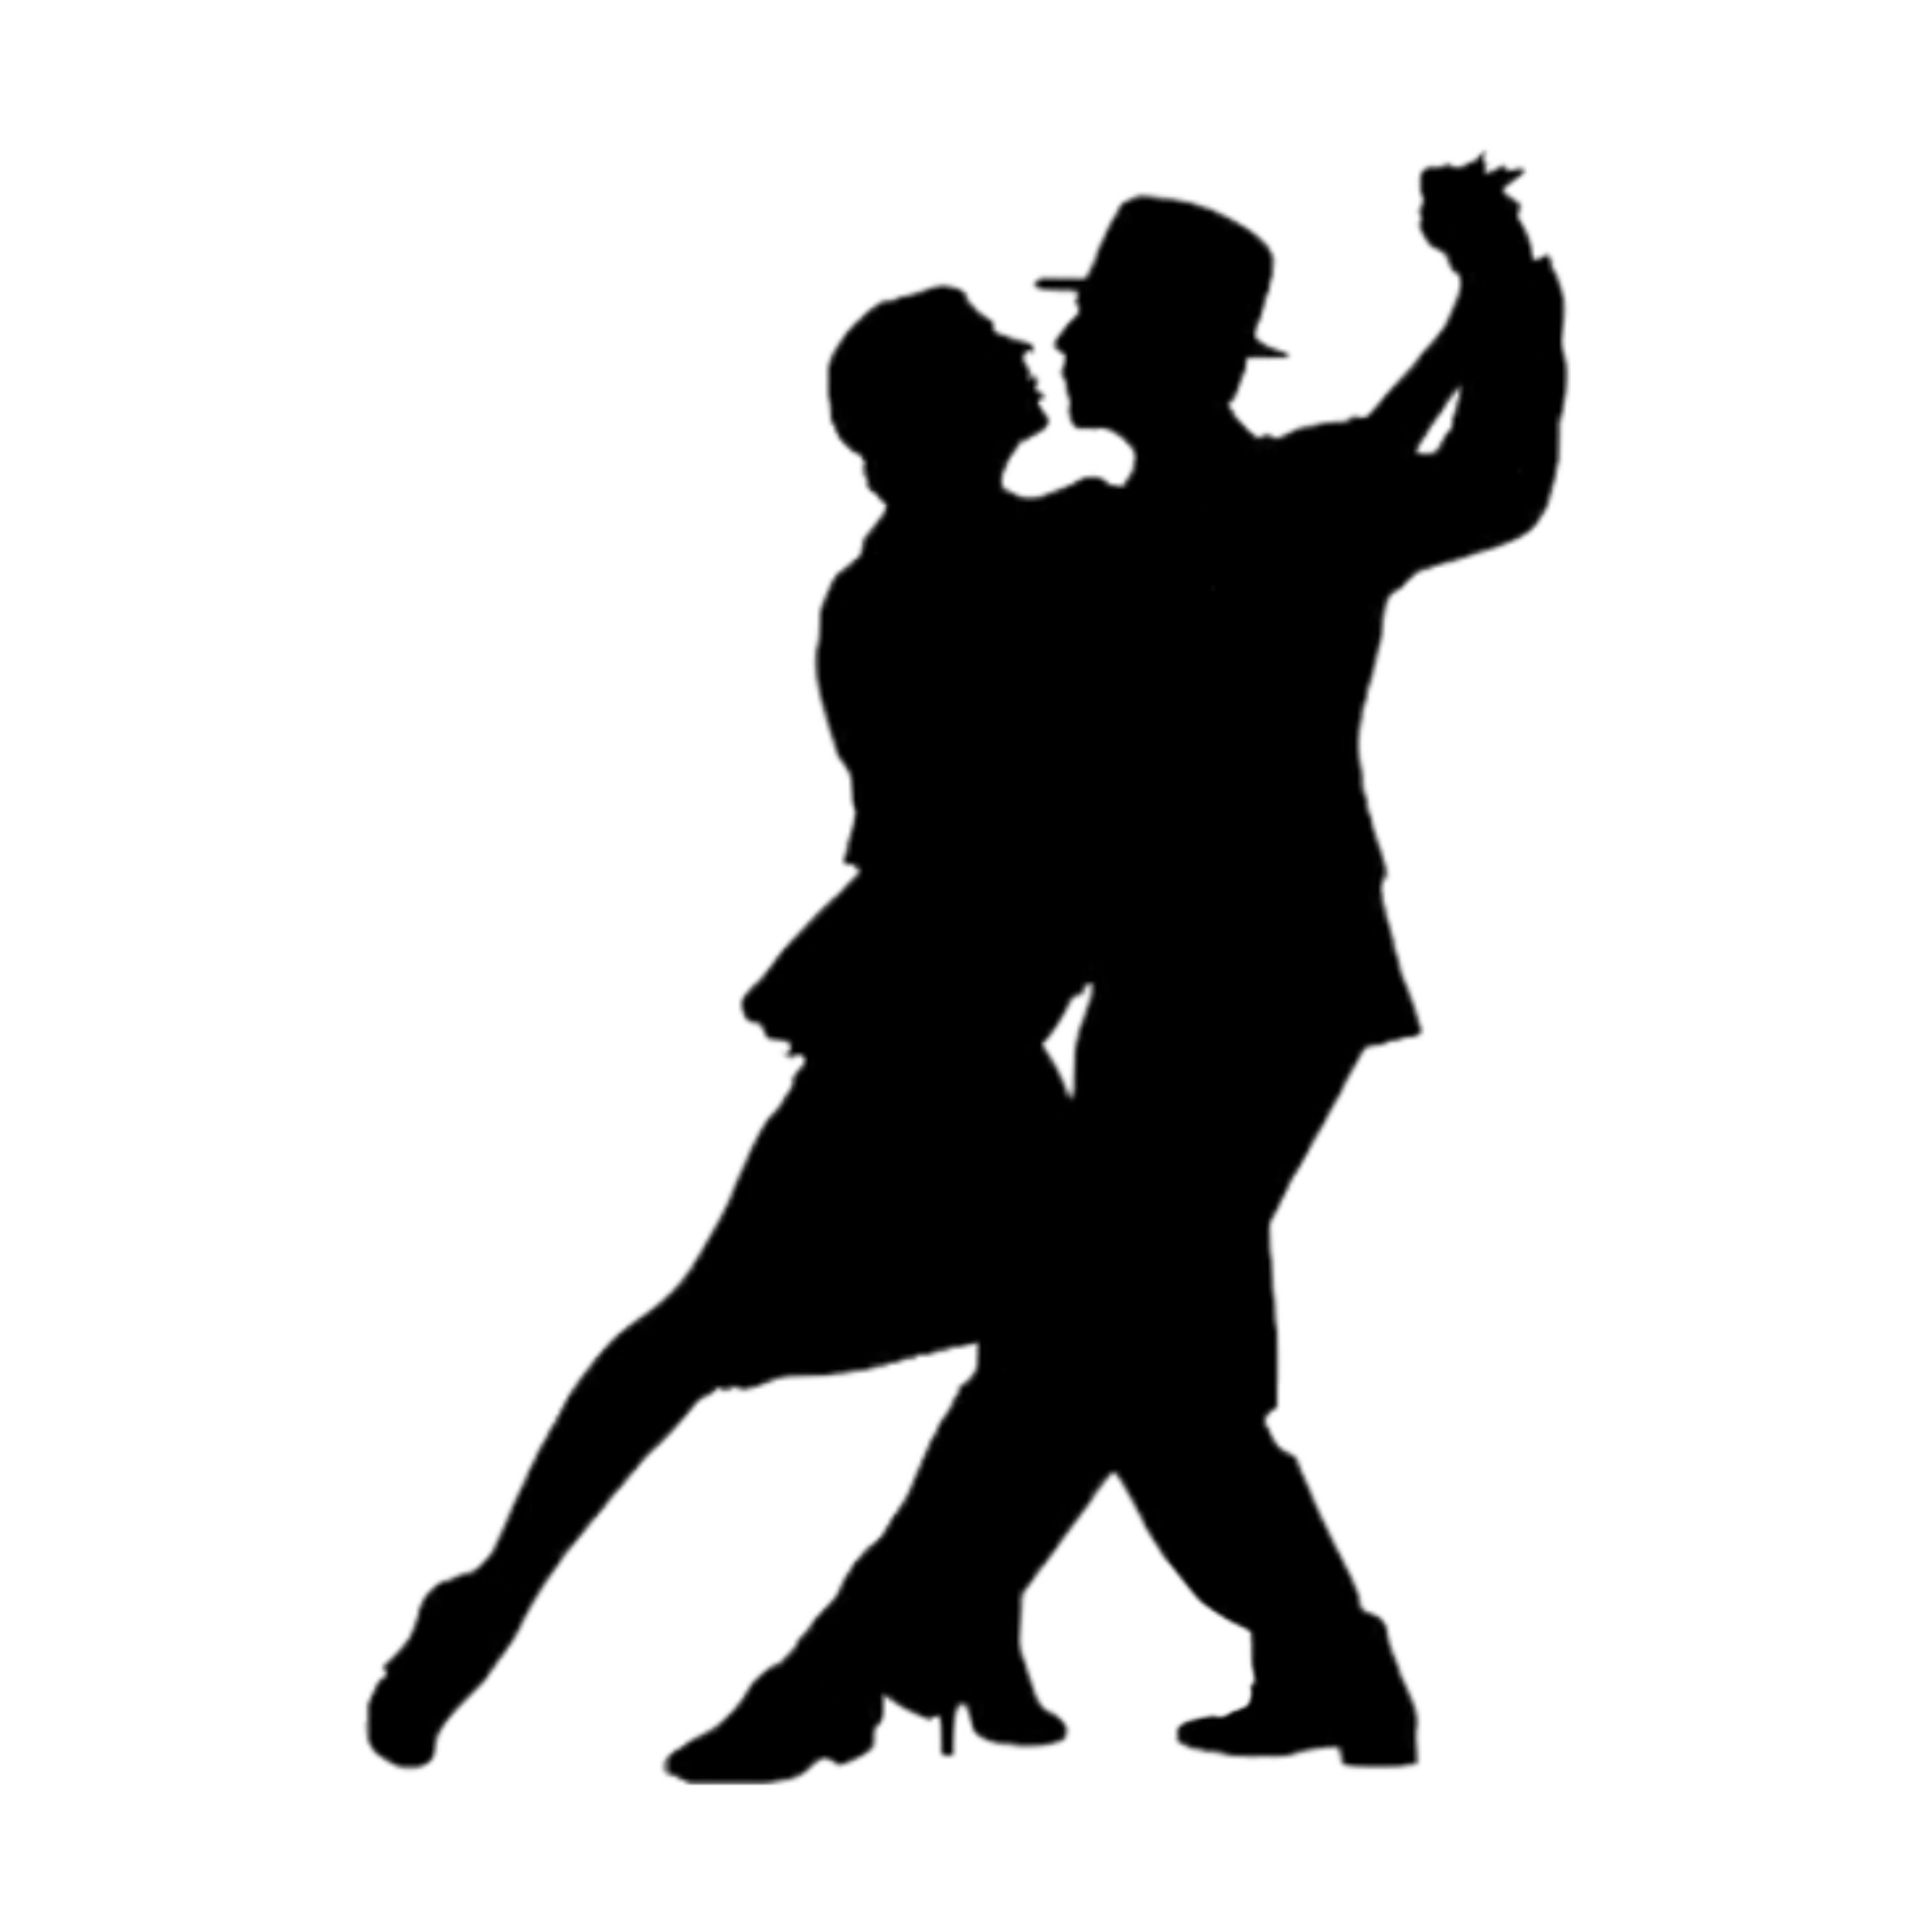 silhouette dancers dancing black man woman dance...